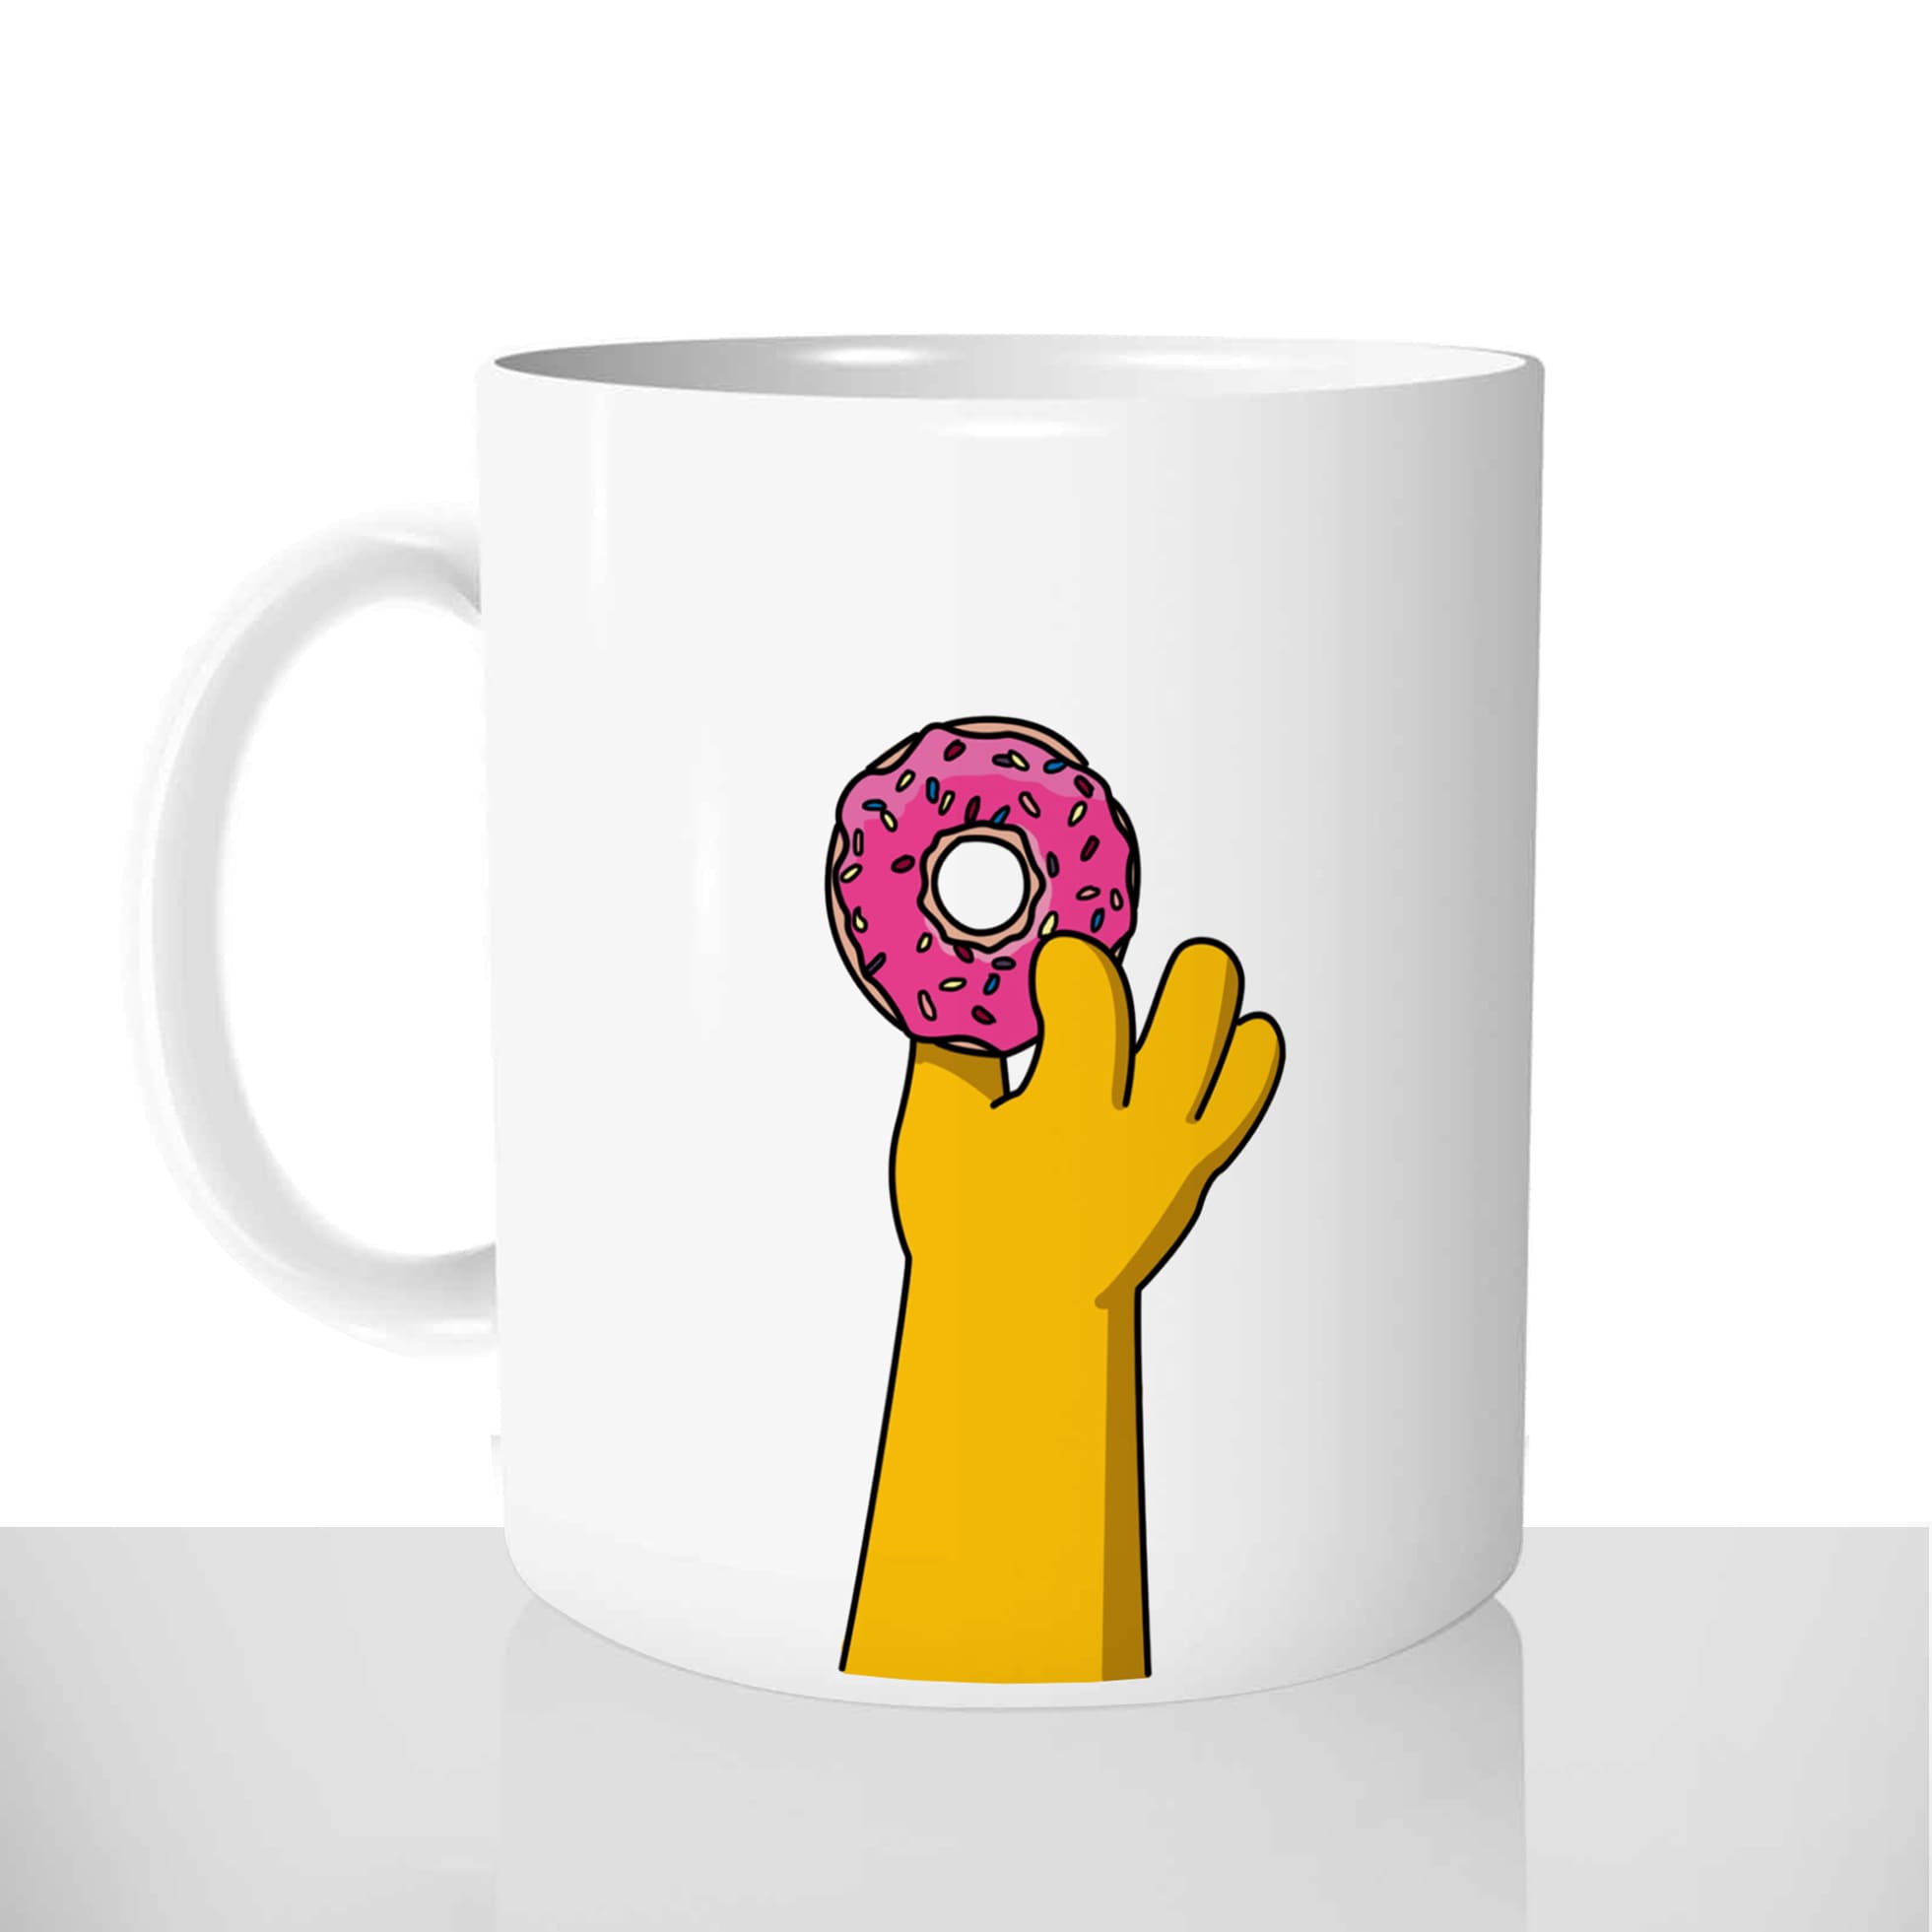 mug classique en céramique 11oz personnalisé personnalisation photo série simpsons homer donut main gourmand beignet offrir cadeau